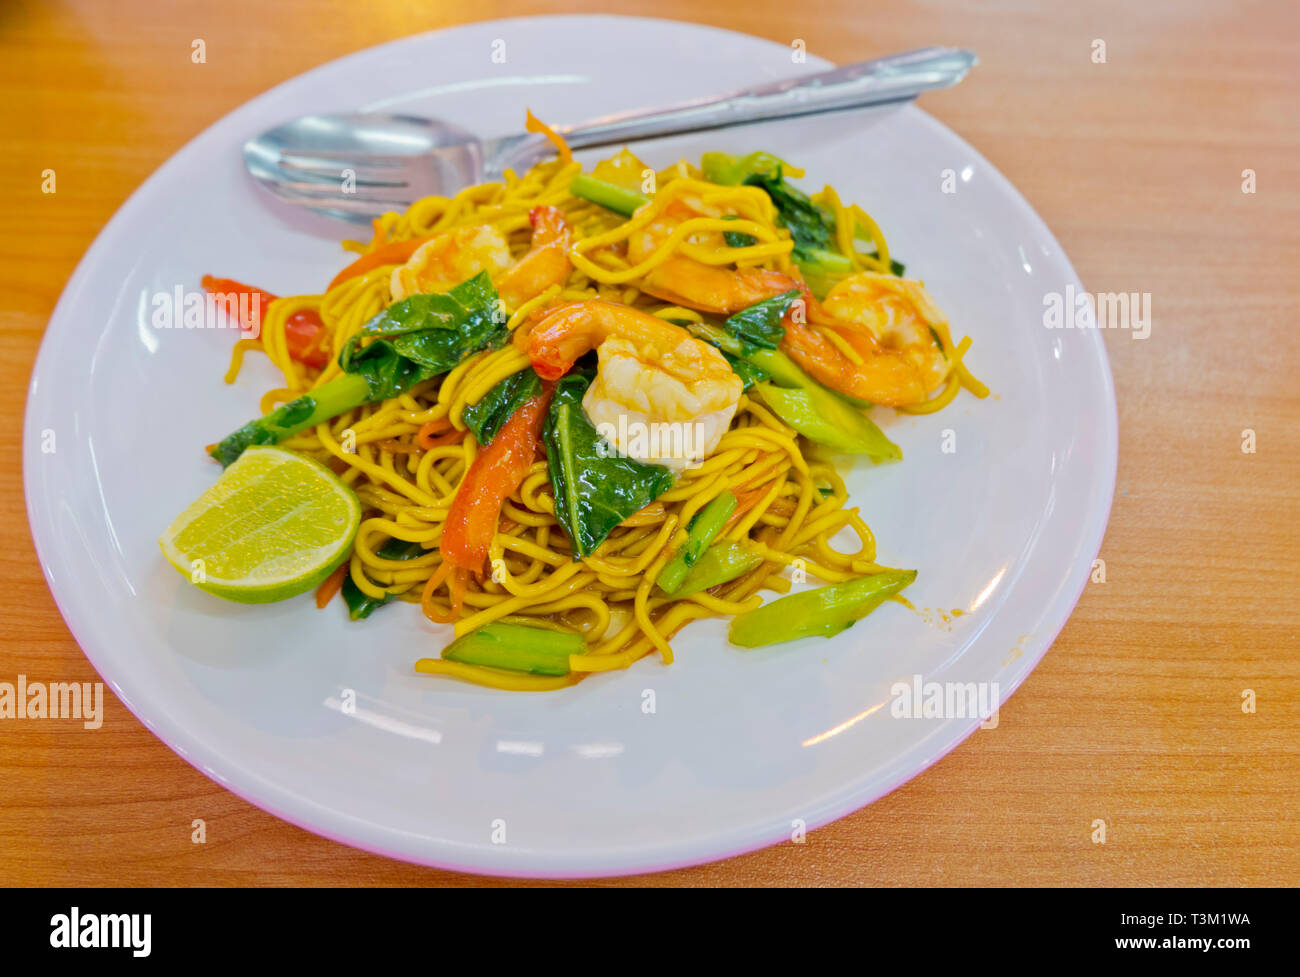 Pad siehe Ew, stiri gebratene Nudeln und Meeresfrüchte, frische Lebensmittel, Markt, Stadt Krabi, Thailand Stockfoto